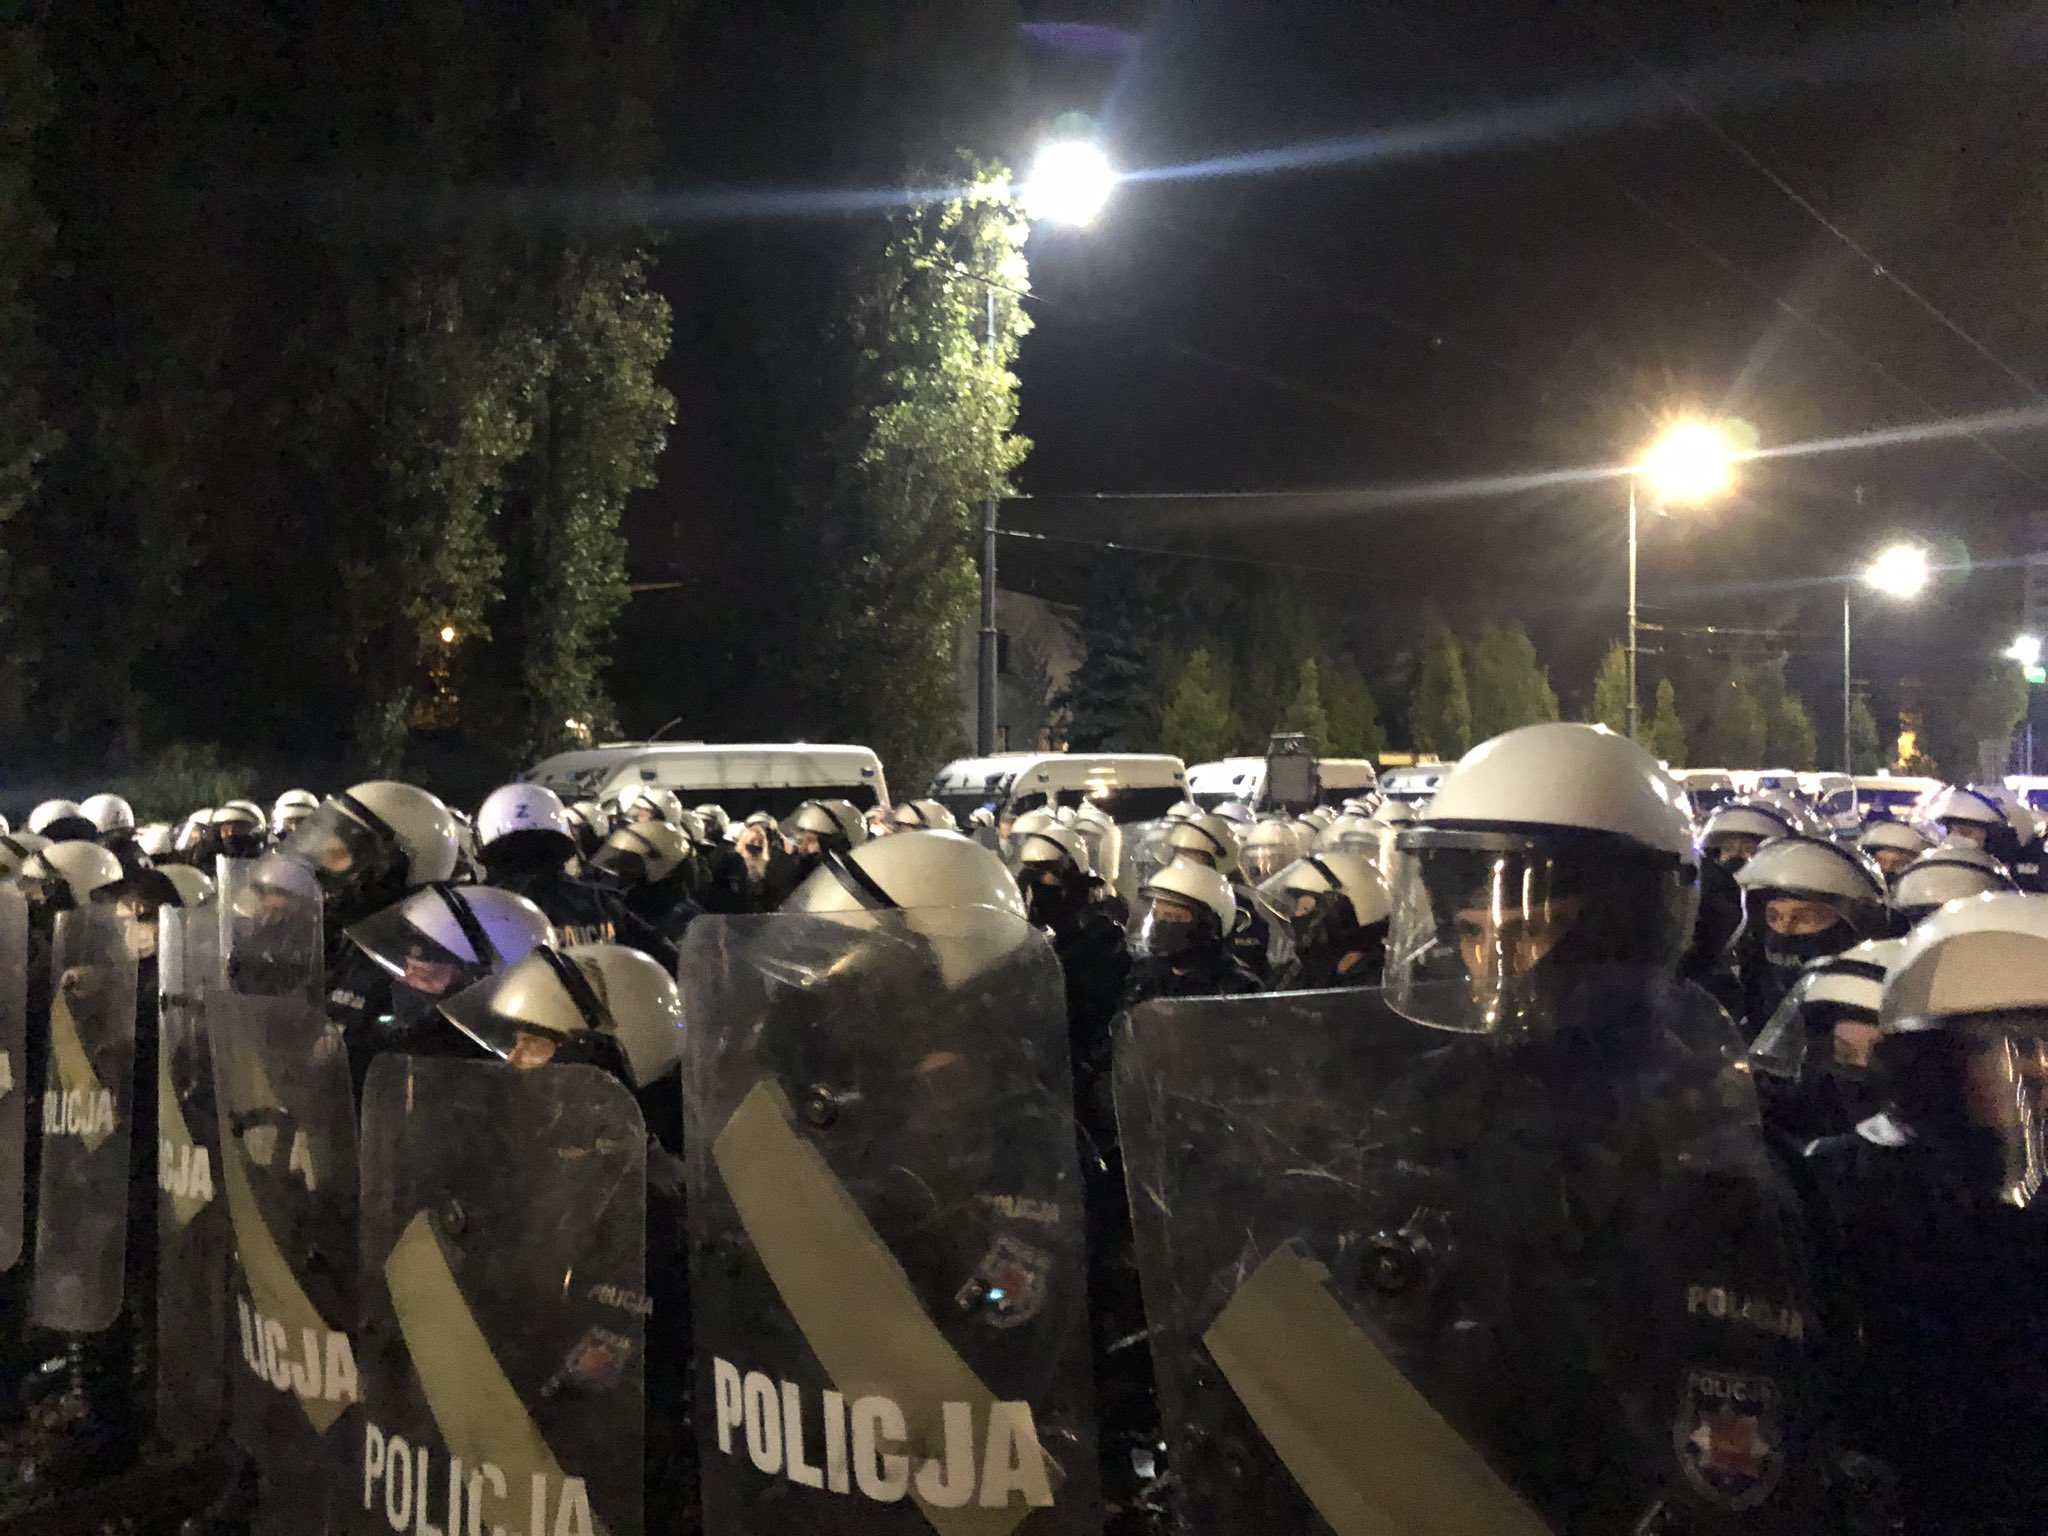 Мер Варшави пригрозив поліції зупинити фінансування через застосовування сили до протестувальників